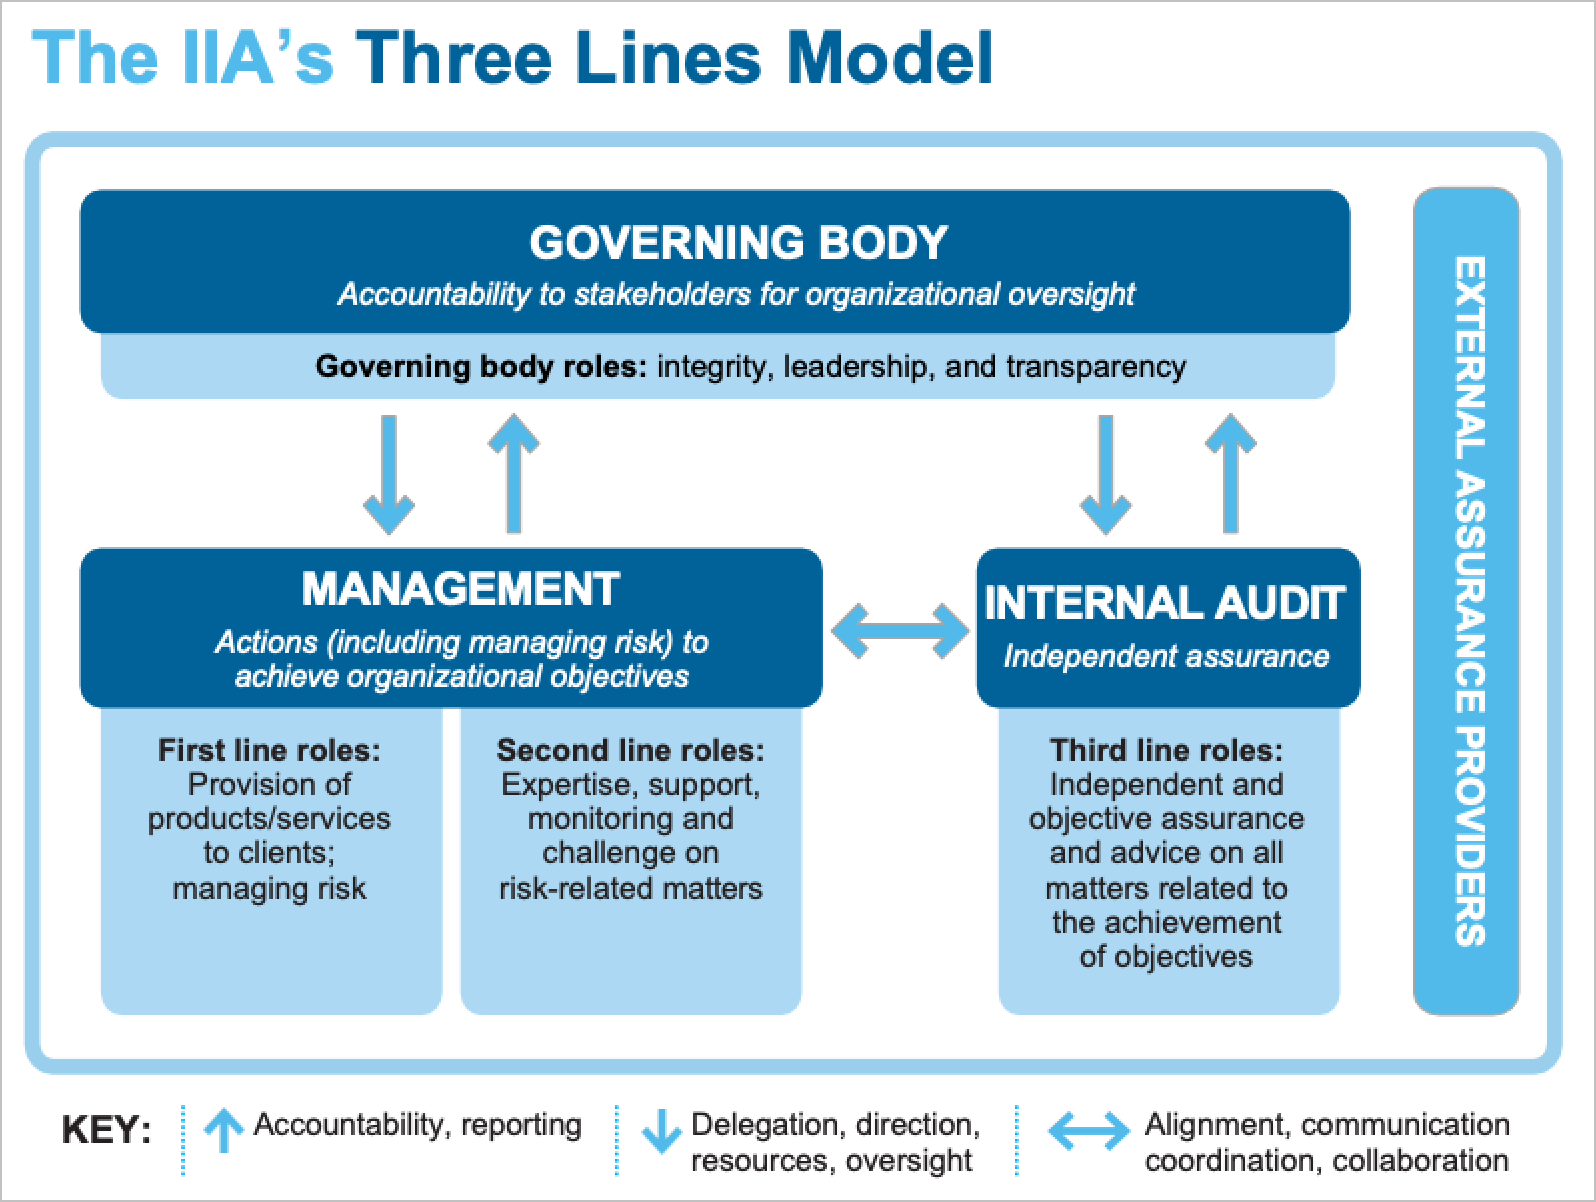 Source: O modelo de três linhas do IIA: An Update of the Three Lines of Defense (Uma atualização das três linhas de defesa), página 4.